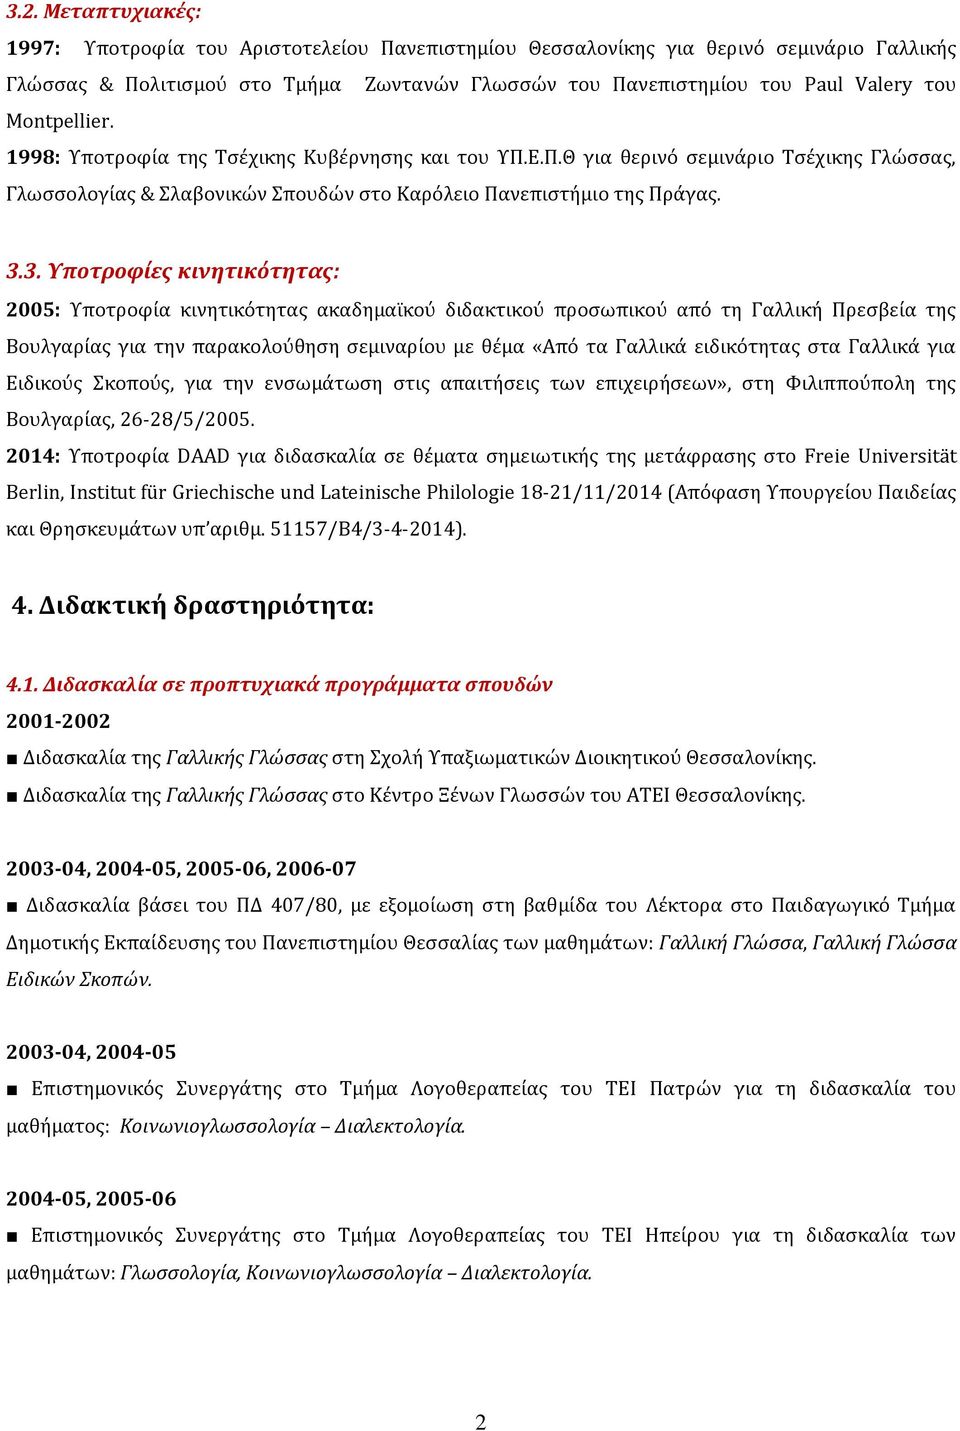 3. Υποτροφίες κινητικότητας: 2005: Υποτροφία κινητικότητας ακαδημαϊκού διδακτικού προσωπικού από τη Γαλλική Πρεσβεία της Βουλγαρίας για την παρακολούθηση σεμιναρίου με θέμα «Από τα Γαλλικά